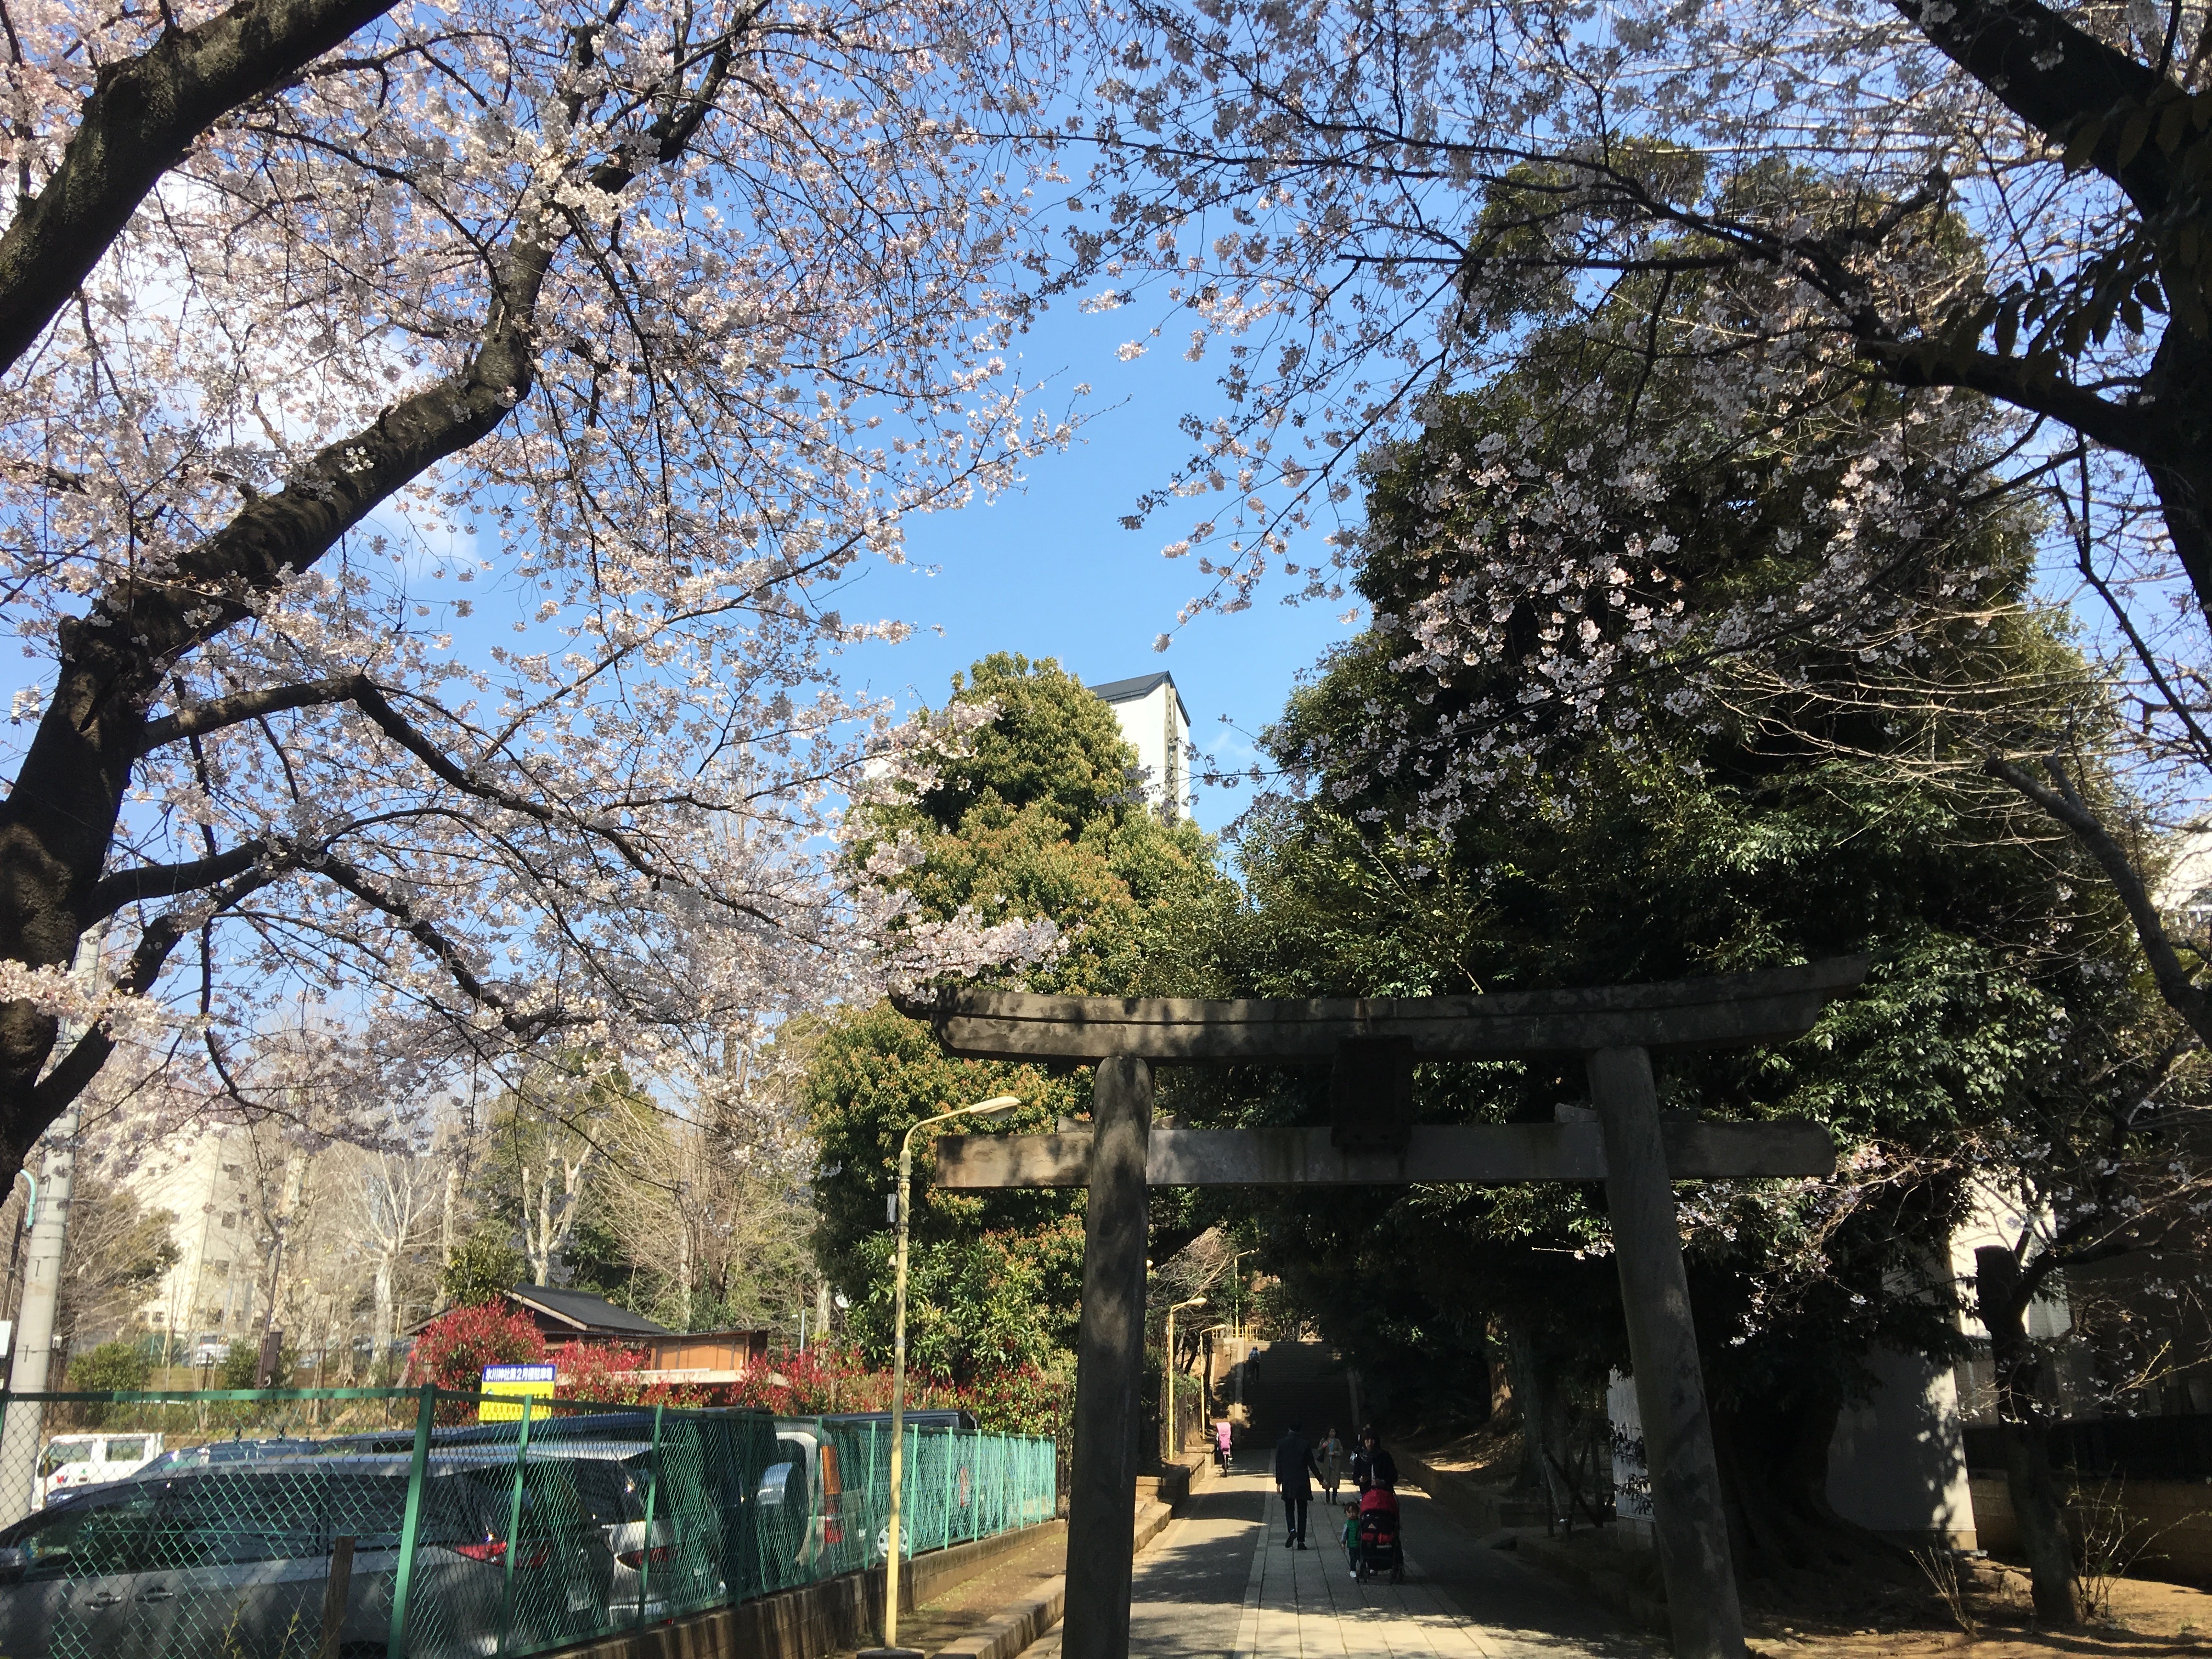 くるりん、桜満開の氷川の杜公園で、今日も元気に駆け回る